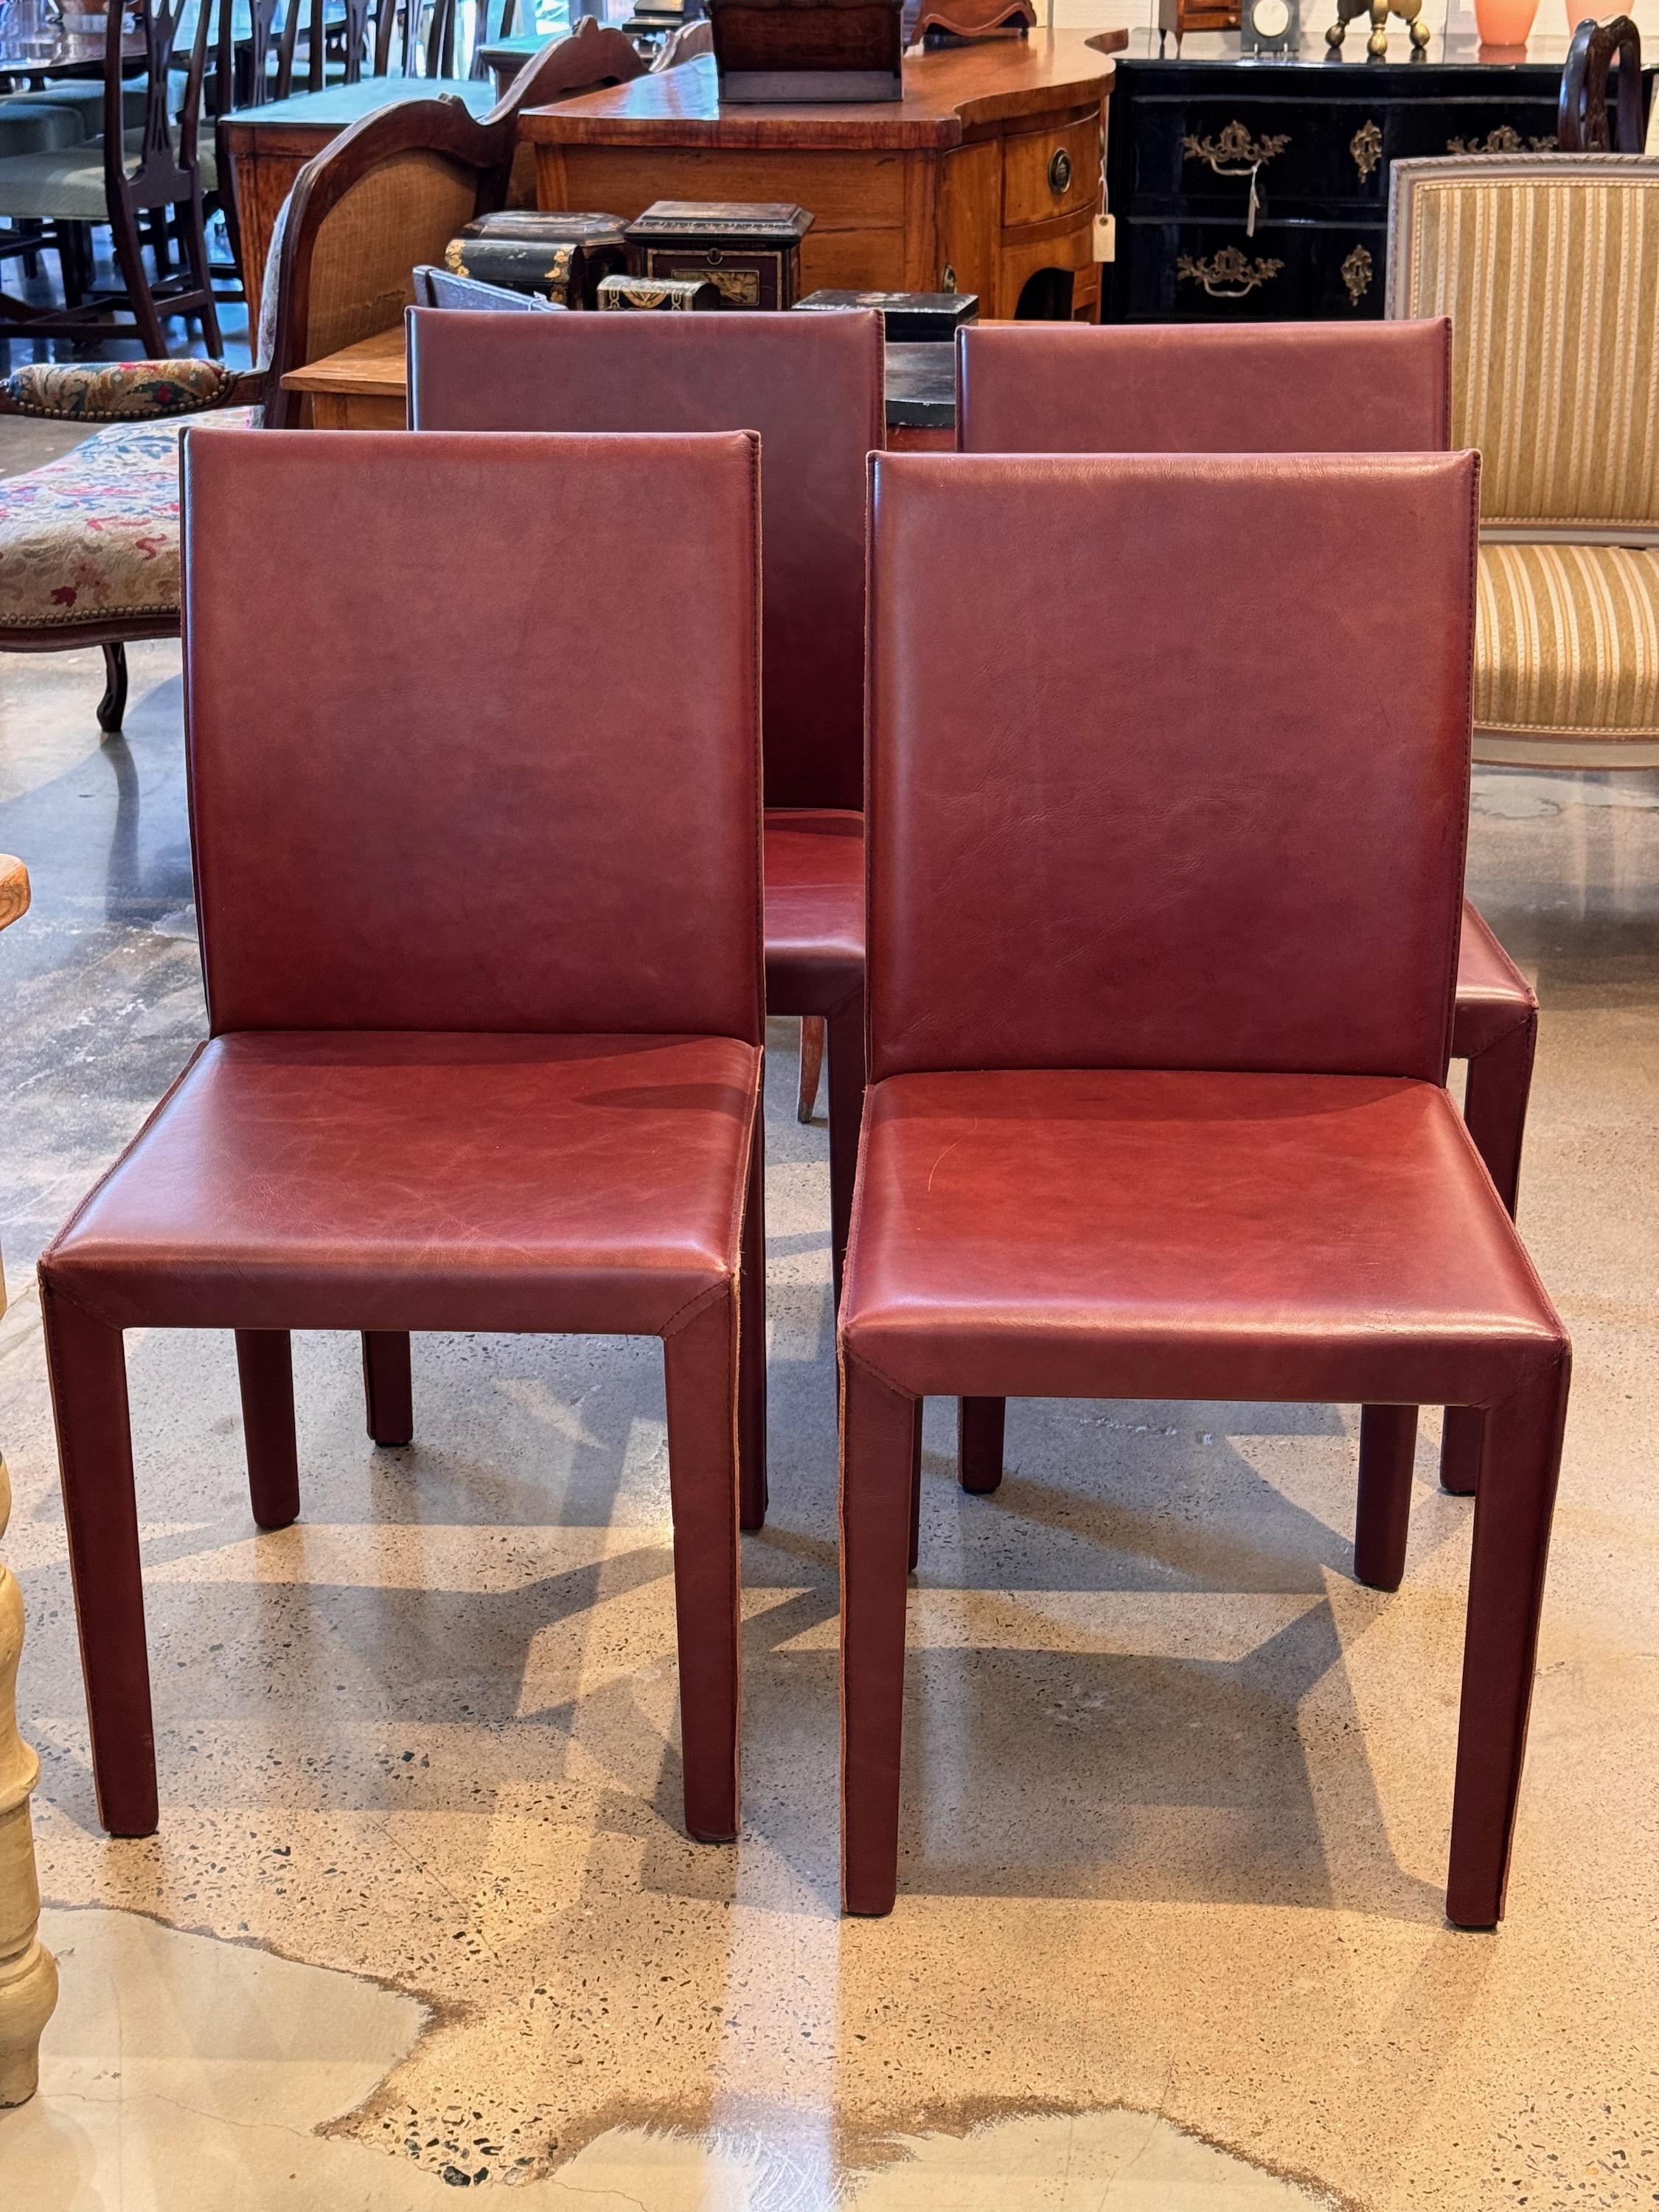 Wir lieben es, modern und antik zu kombinieren. Und diese Stühle sind ein toller Mixer.